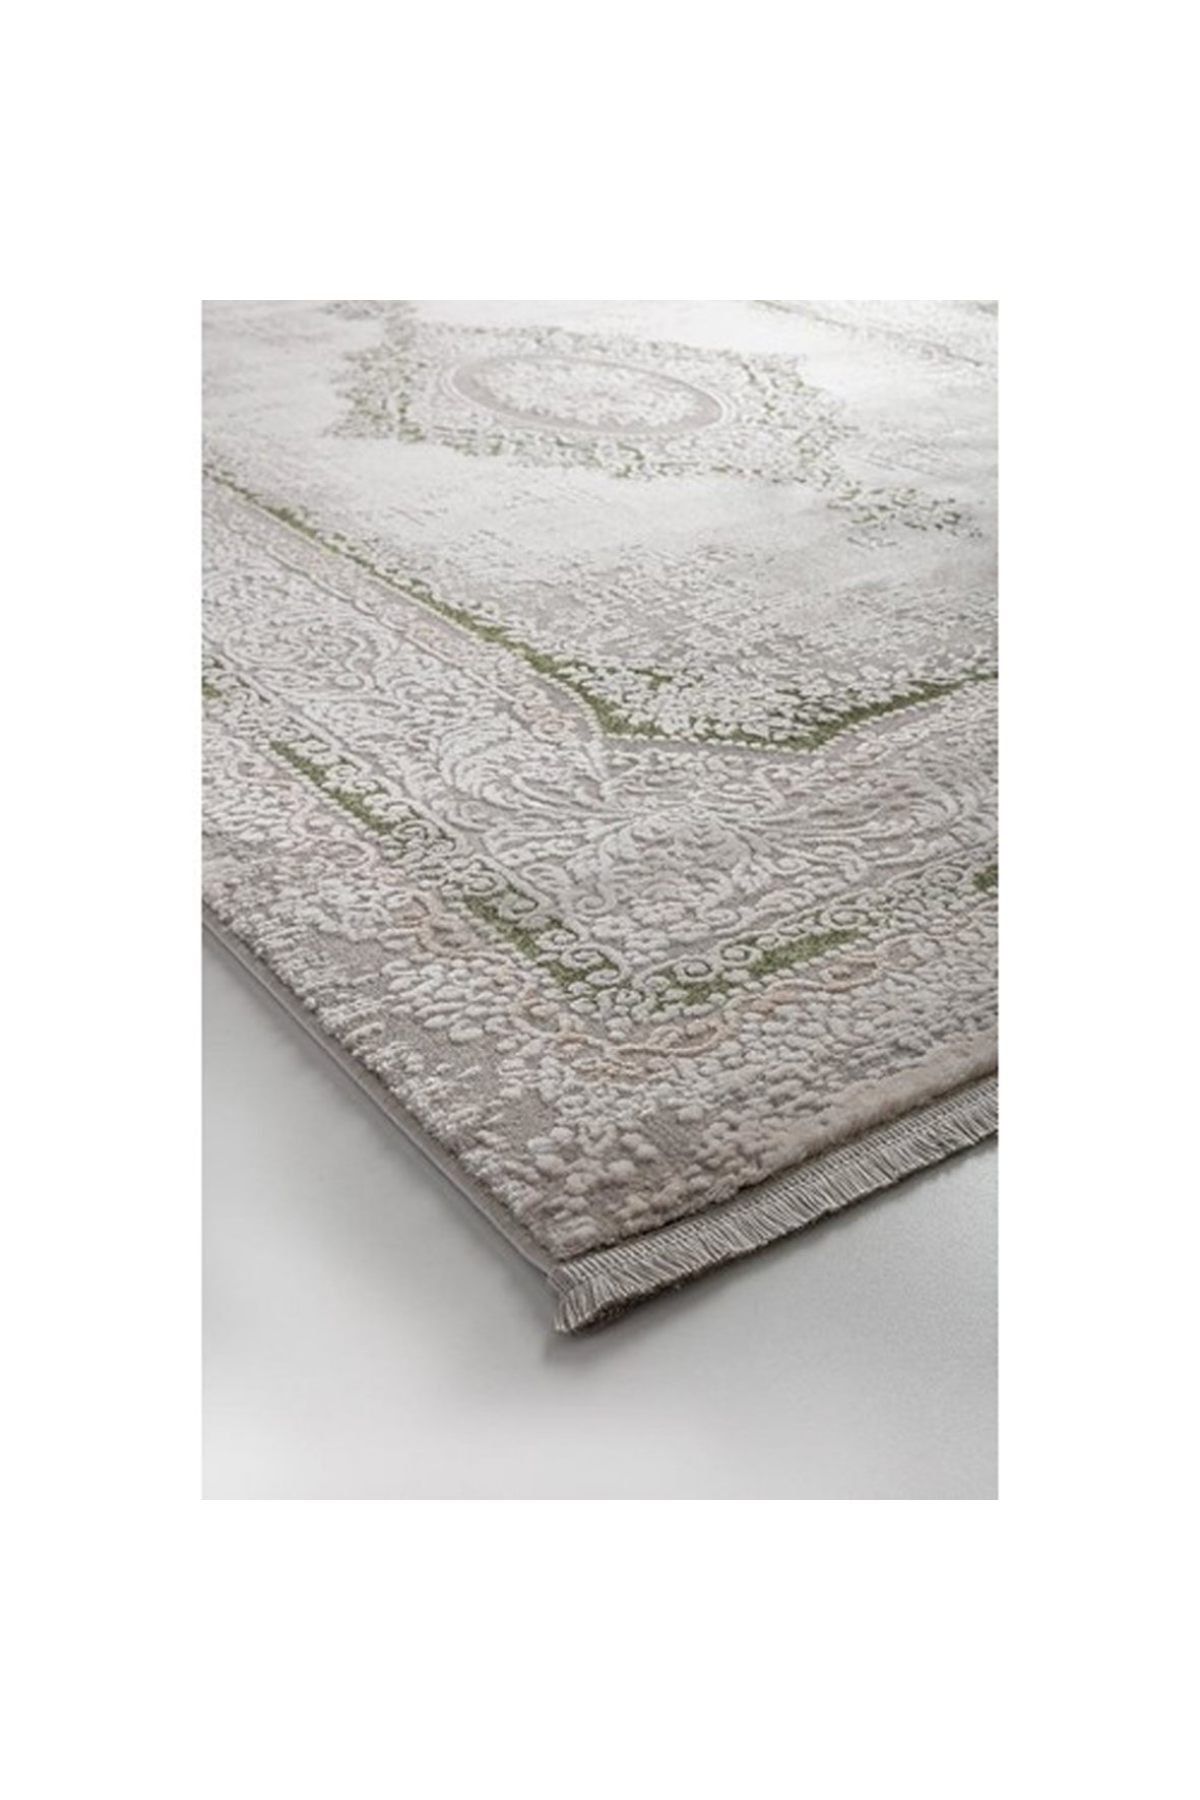 Bahariye Halı Ezgi Serisi Modern Halı Tw 5664 Beyaz/yeşil